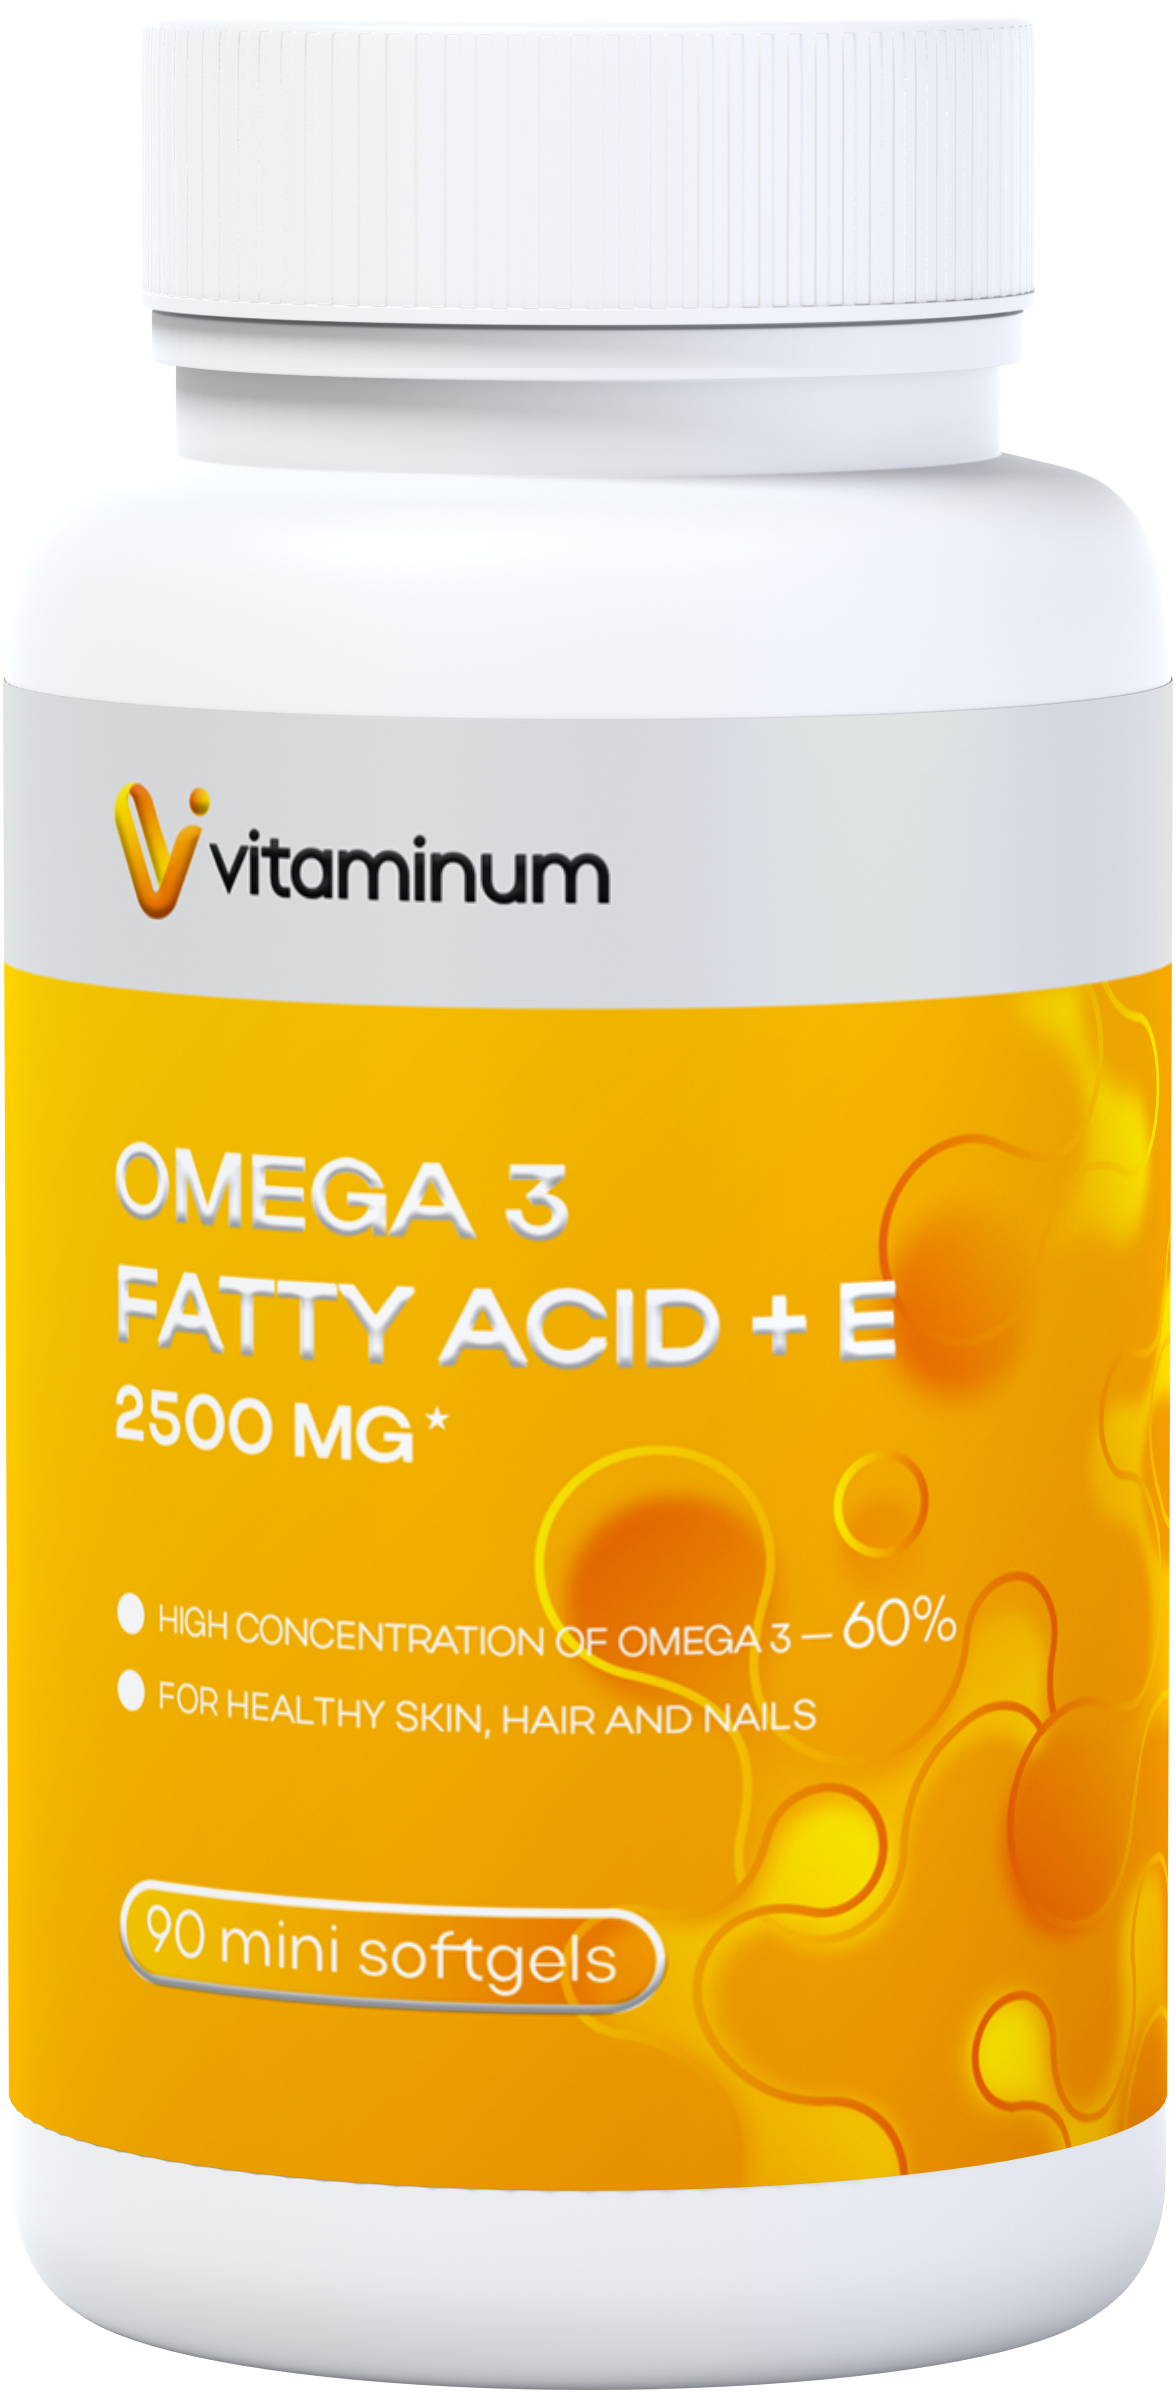  Vitaminum ОМЕГА 3 60% + витамин Е (2500 MG*) 90 капсул 700 мг   в Усть-Илимск